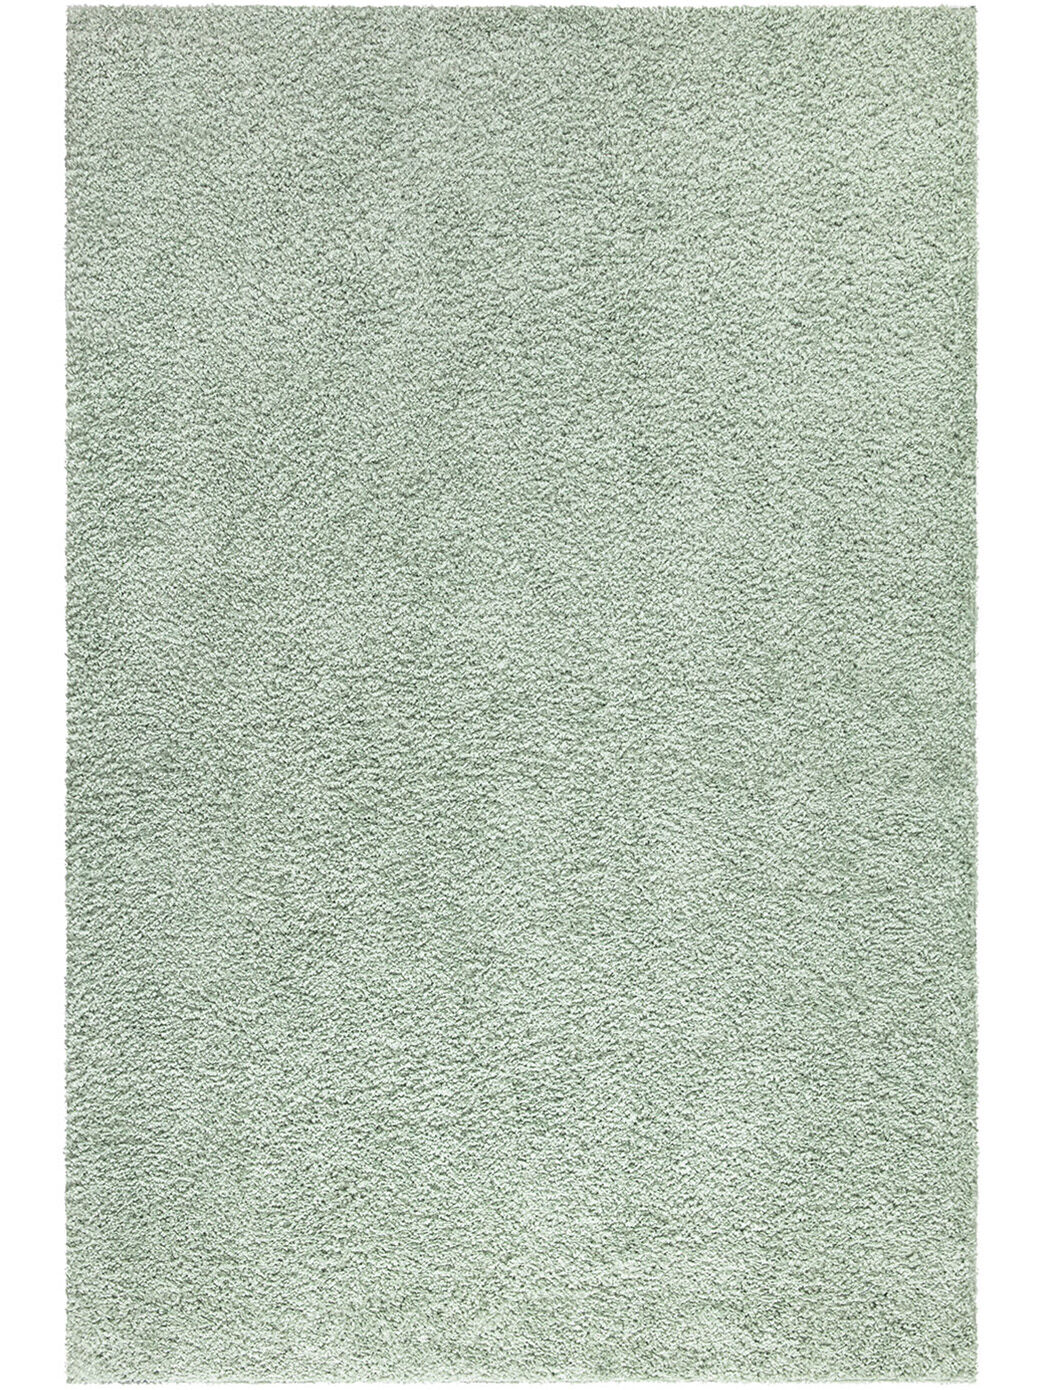 Hochflor Teppich Gruen 160x230 1